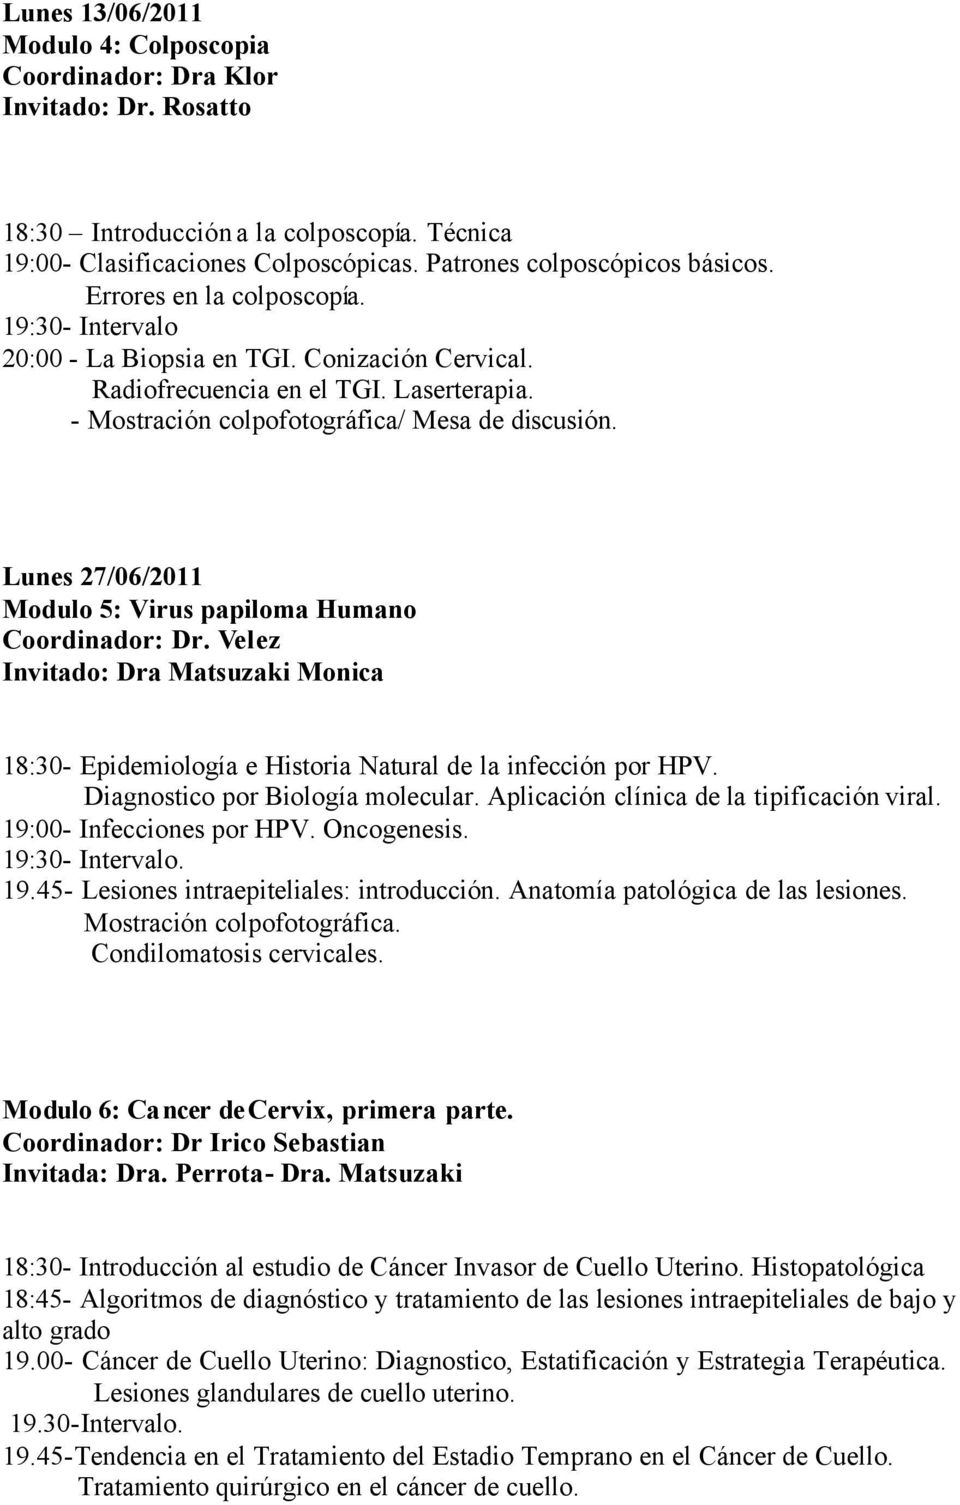 Lunes 27/06/2011 Modulo 5: Virus papiloma Humano Coordinador: Dr. Velez Invitado: Dra Matsuzaki Monica 18:30- Epidemiología e Historia Natural de la infección por HPV.